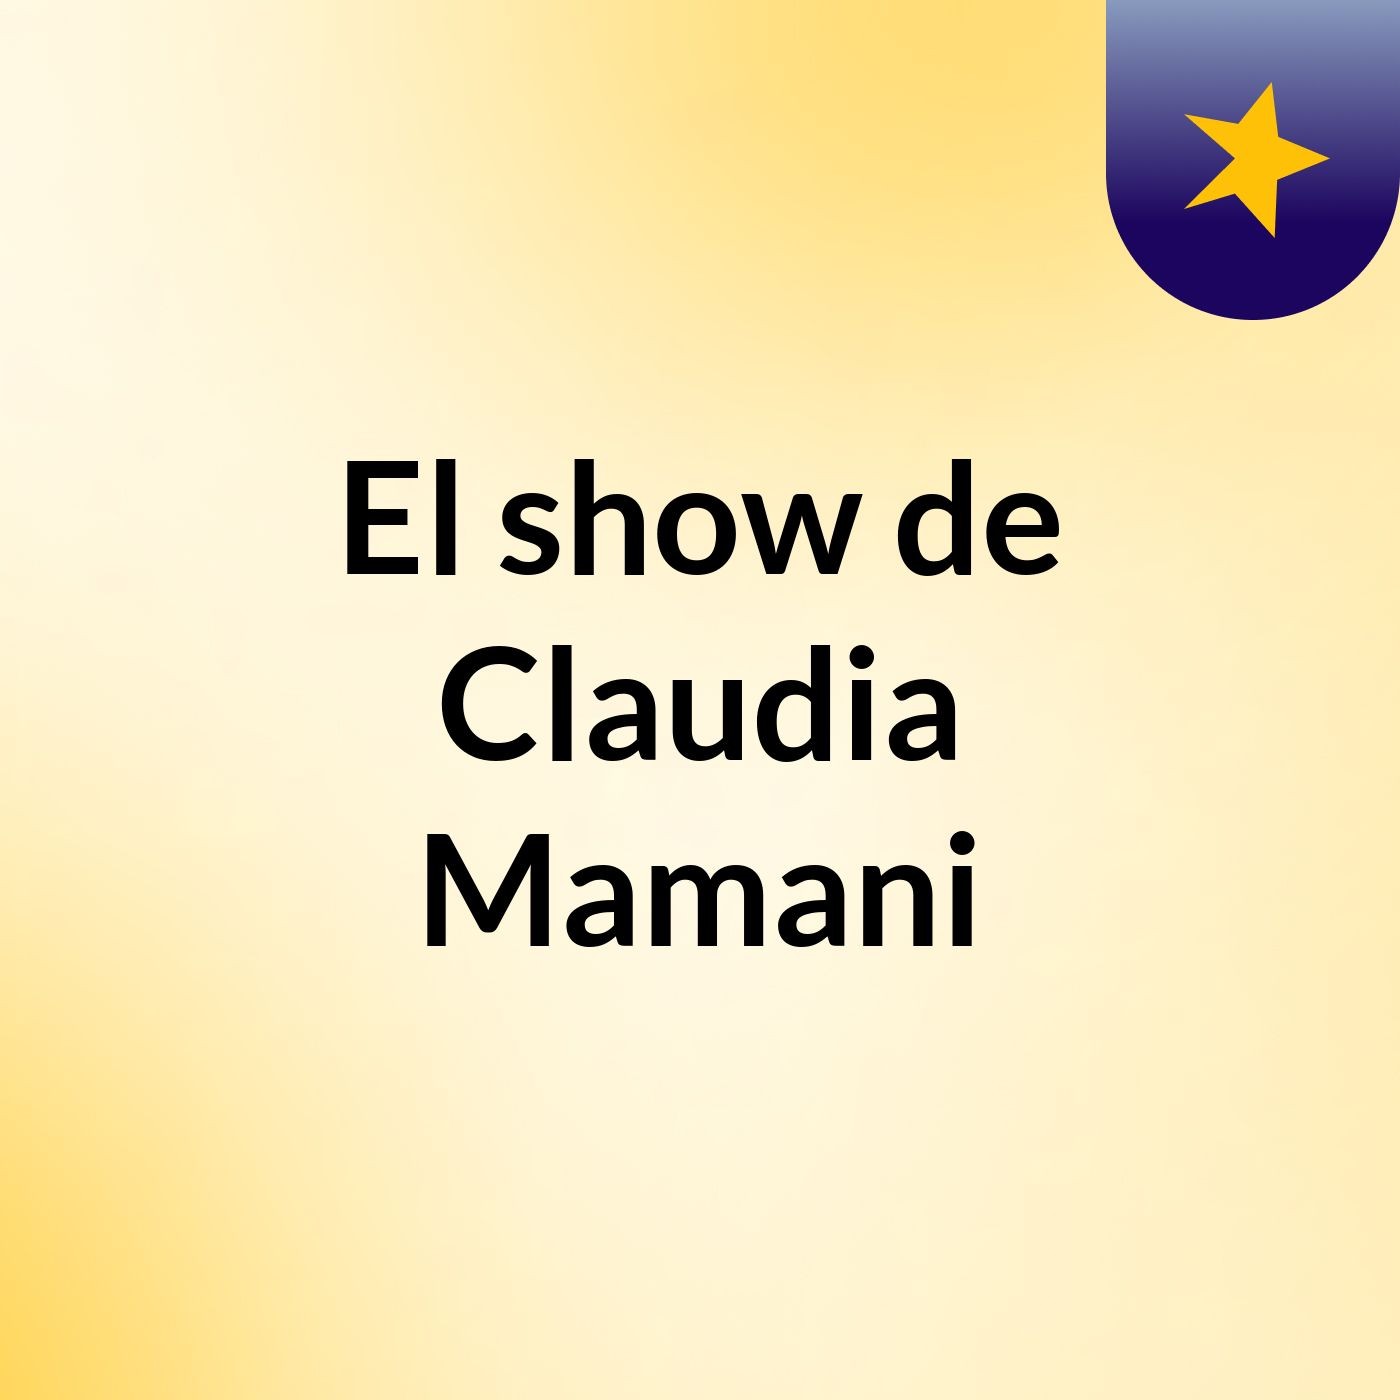 El show de Claudia Mamani